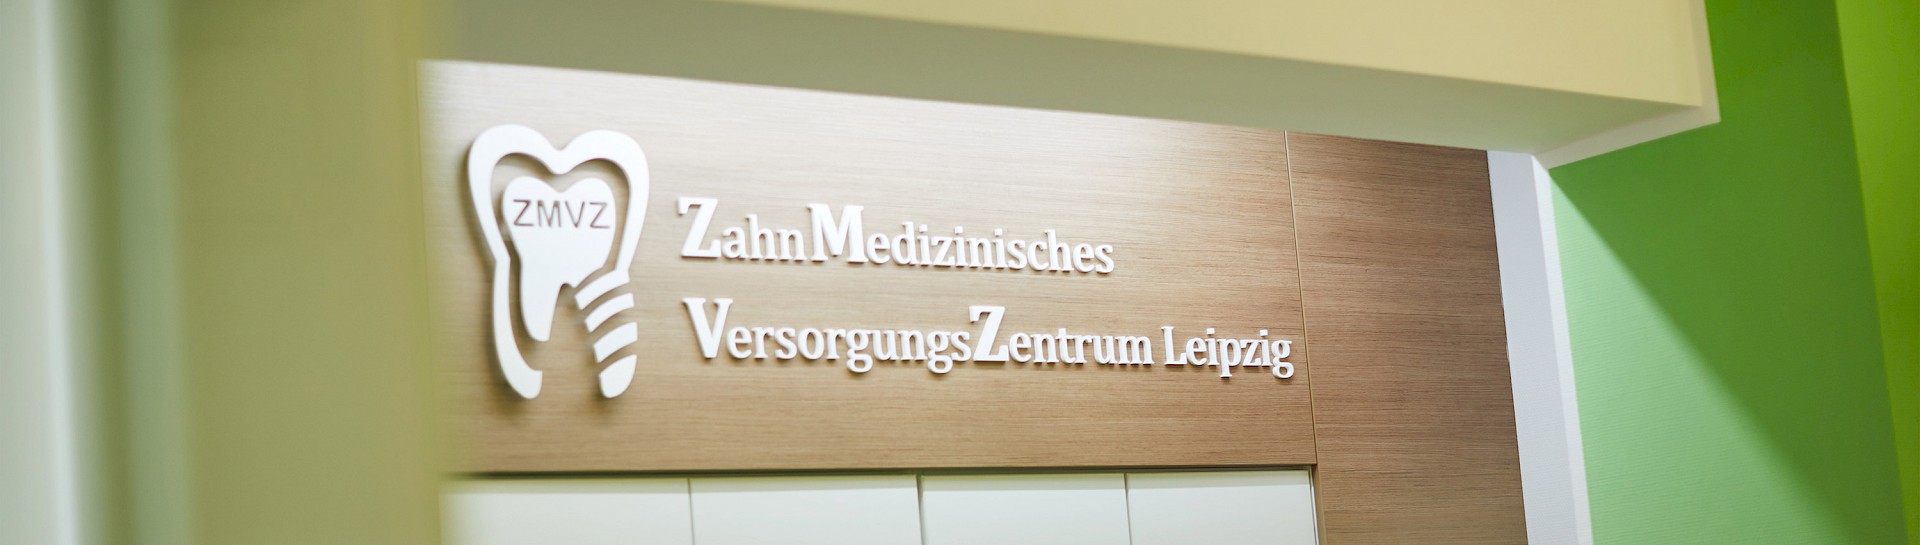 ZMVZ Zahnmedizinisches Versorgungszentrum Service